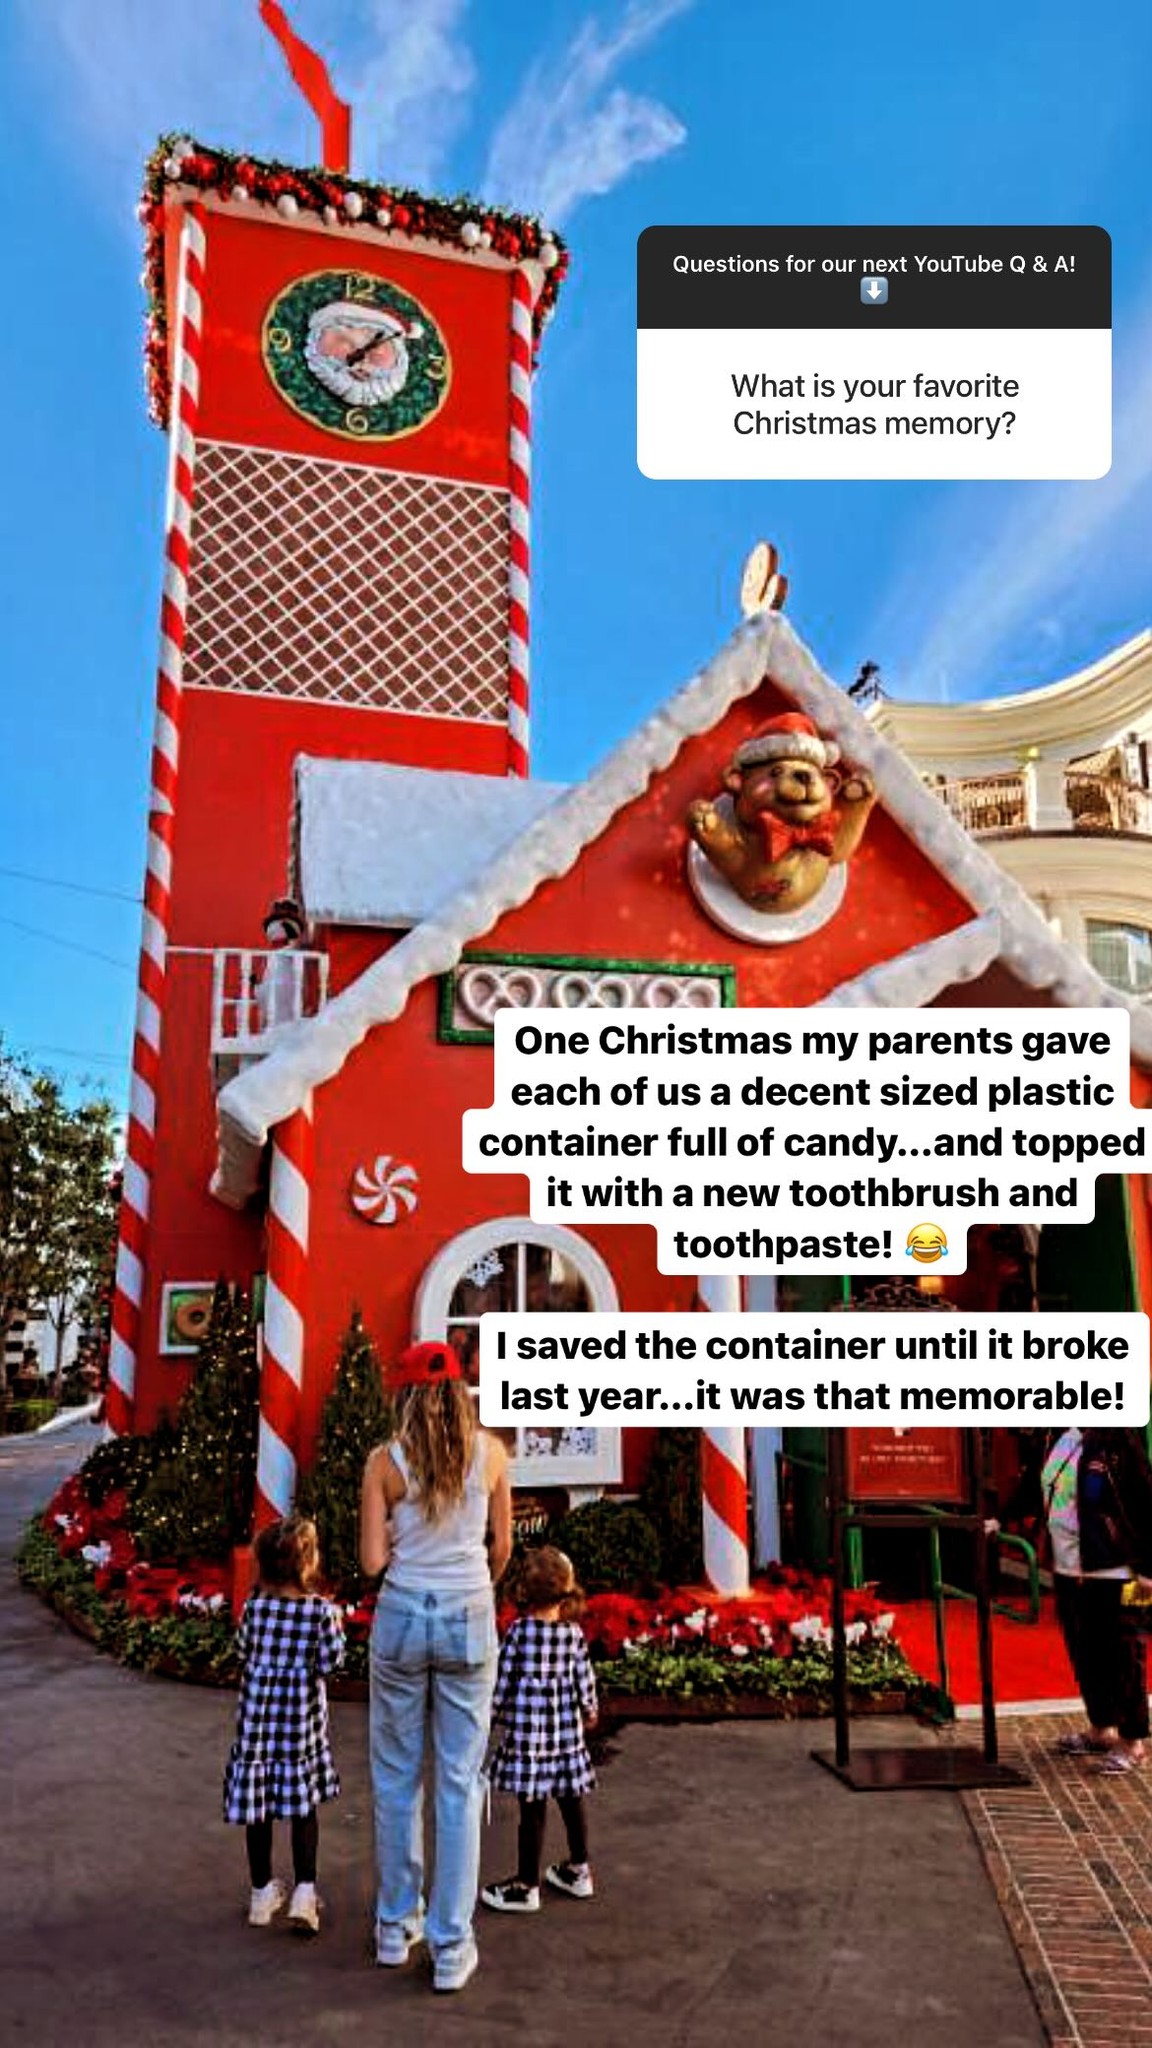 Jinger Duggar shared her 'favorite Christmas memory'